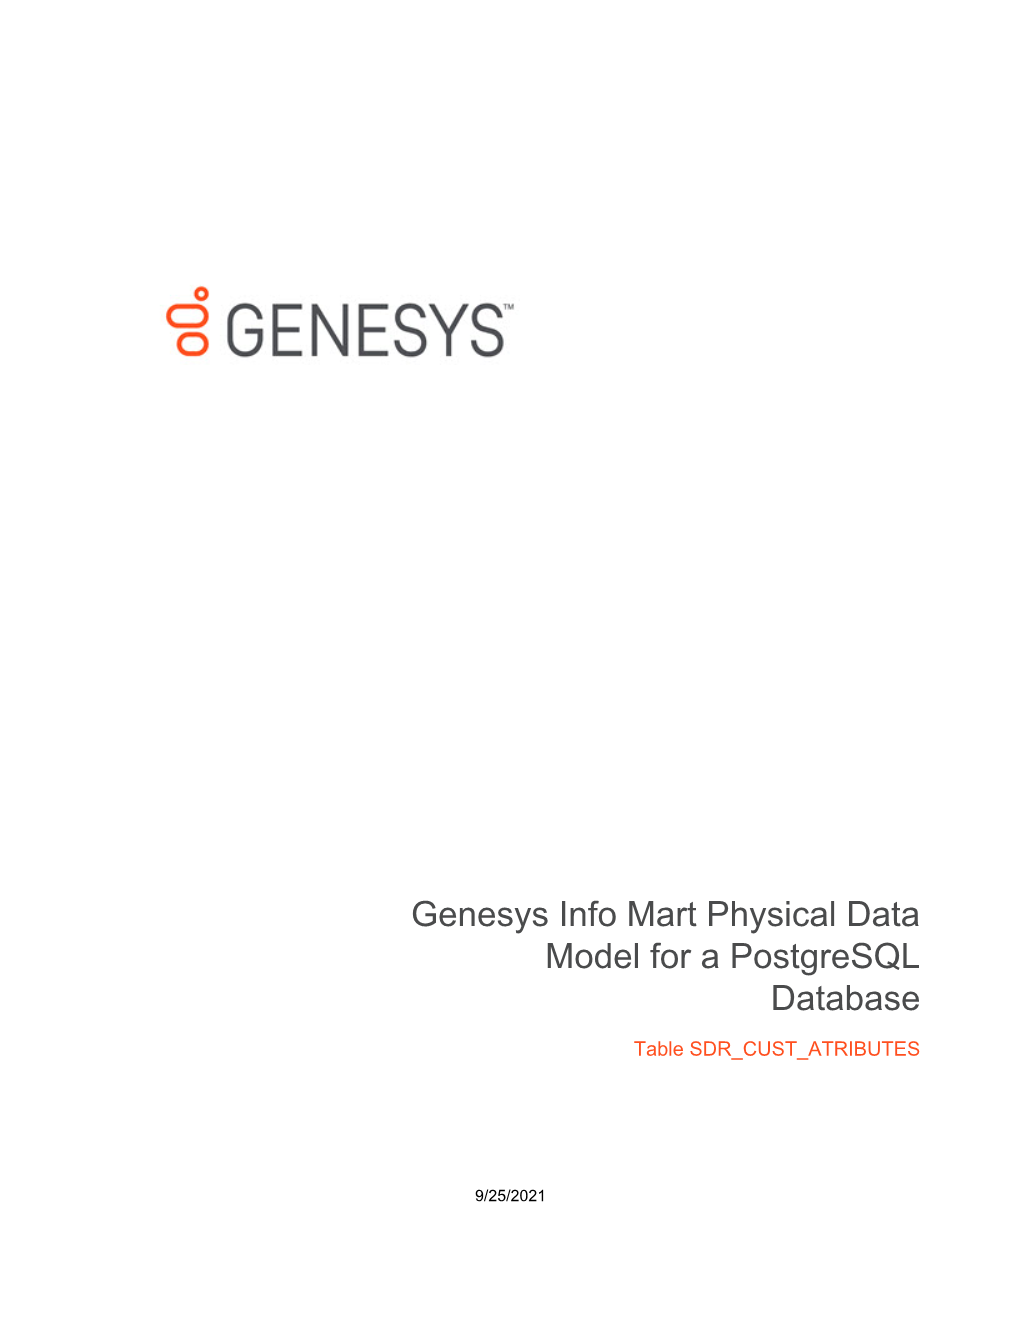 Genesys Info Mart Physical Data Model for a Postgresql Database